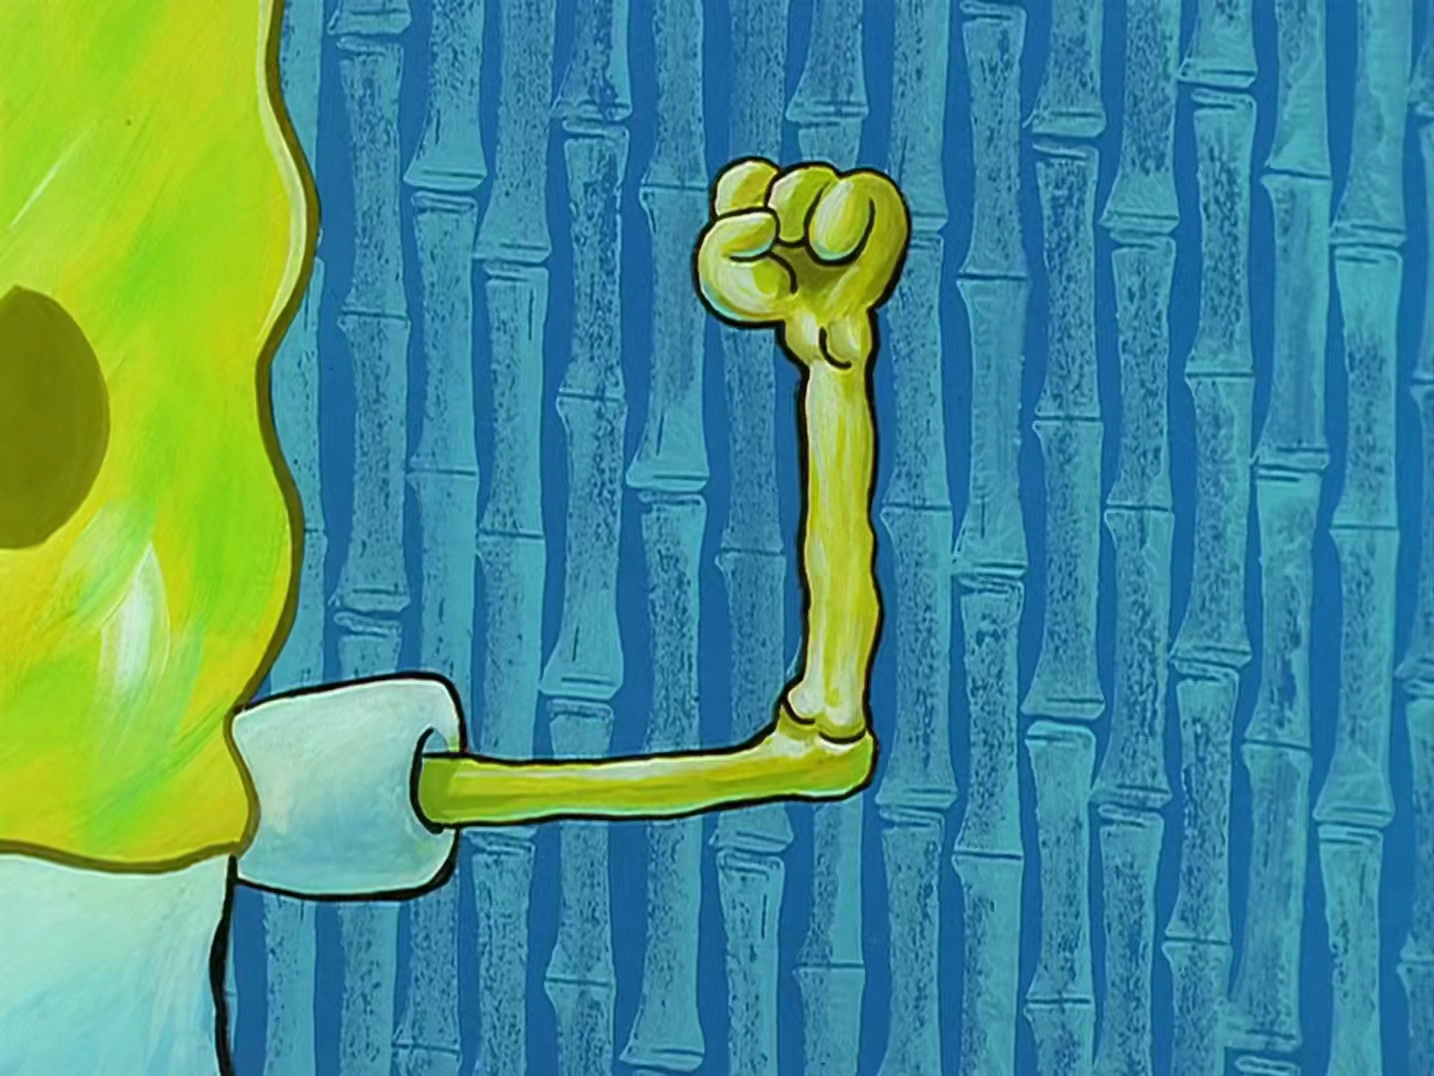 spongebob muscles